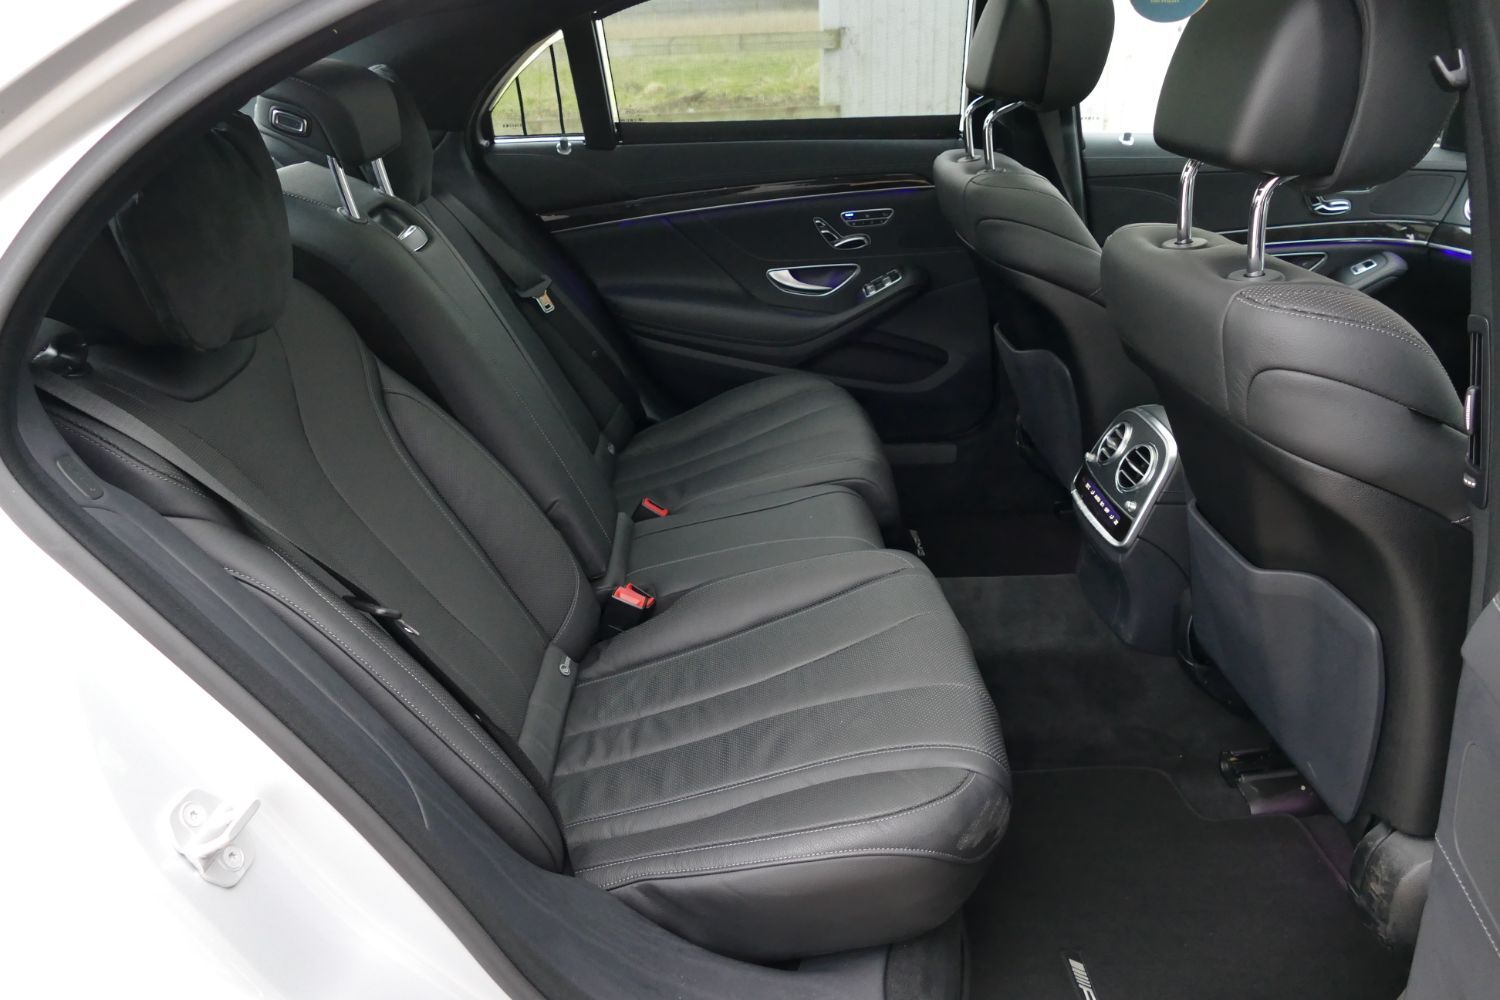 Mercedes-Benz S 600 interior - Seats